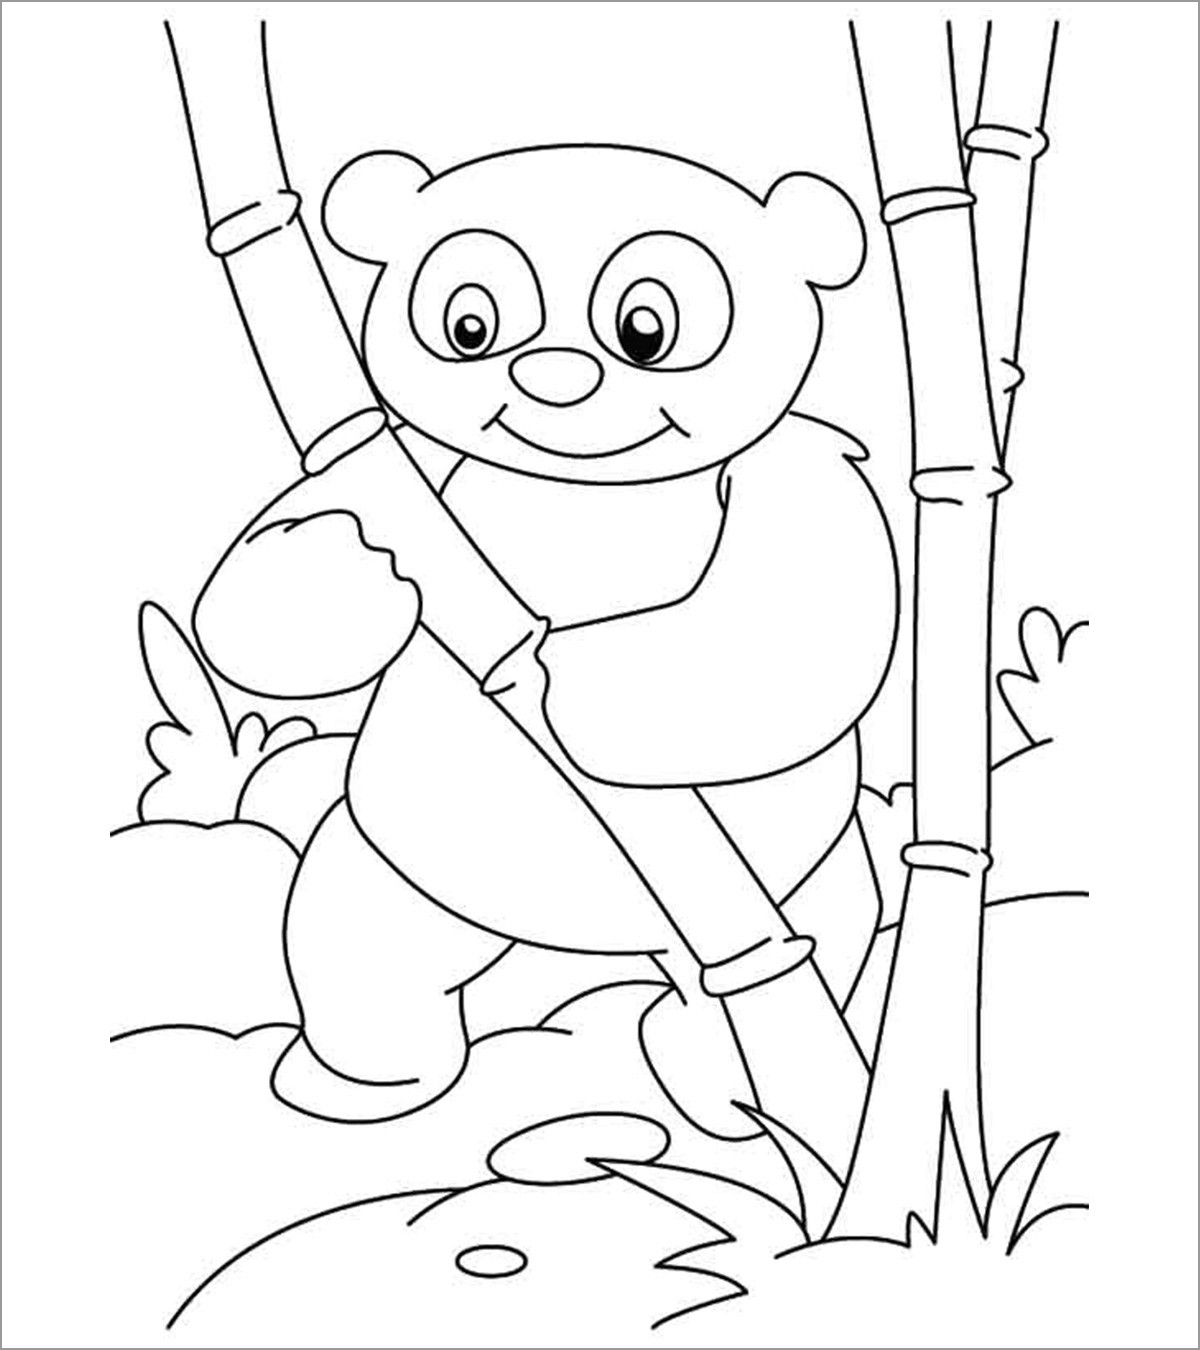 Бамбук раскраска для детей